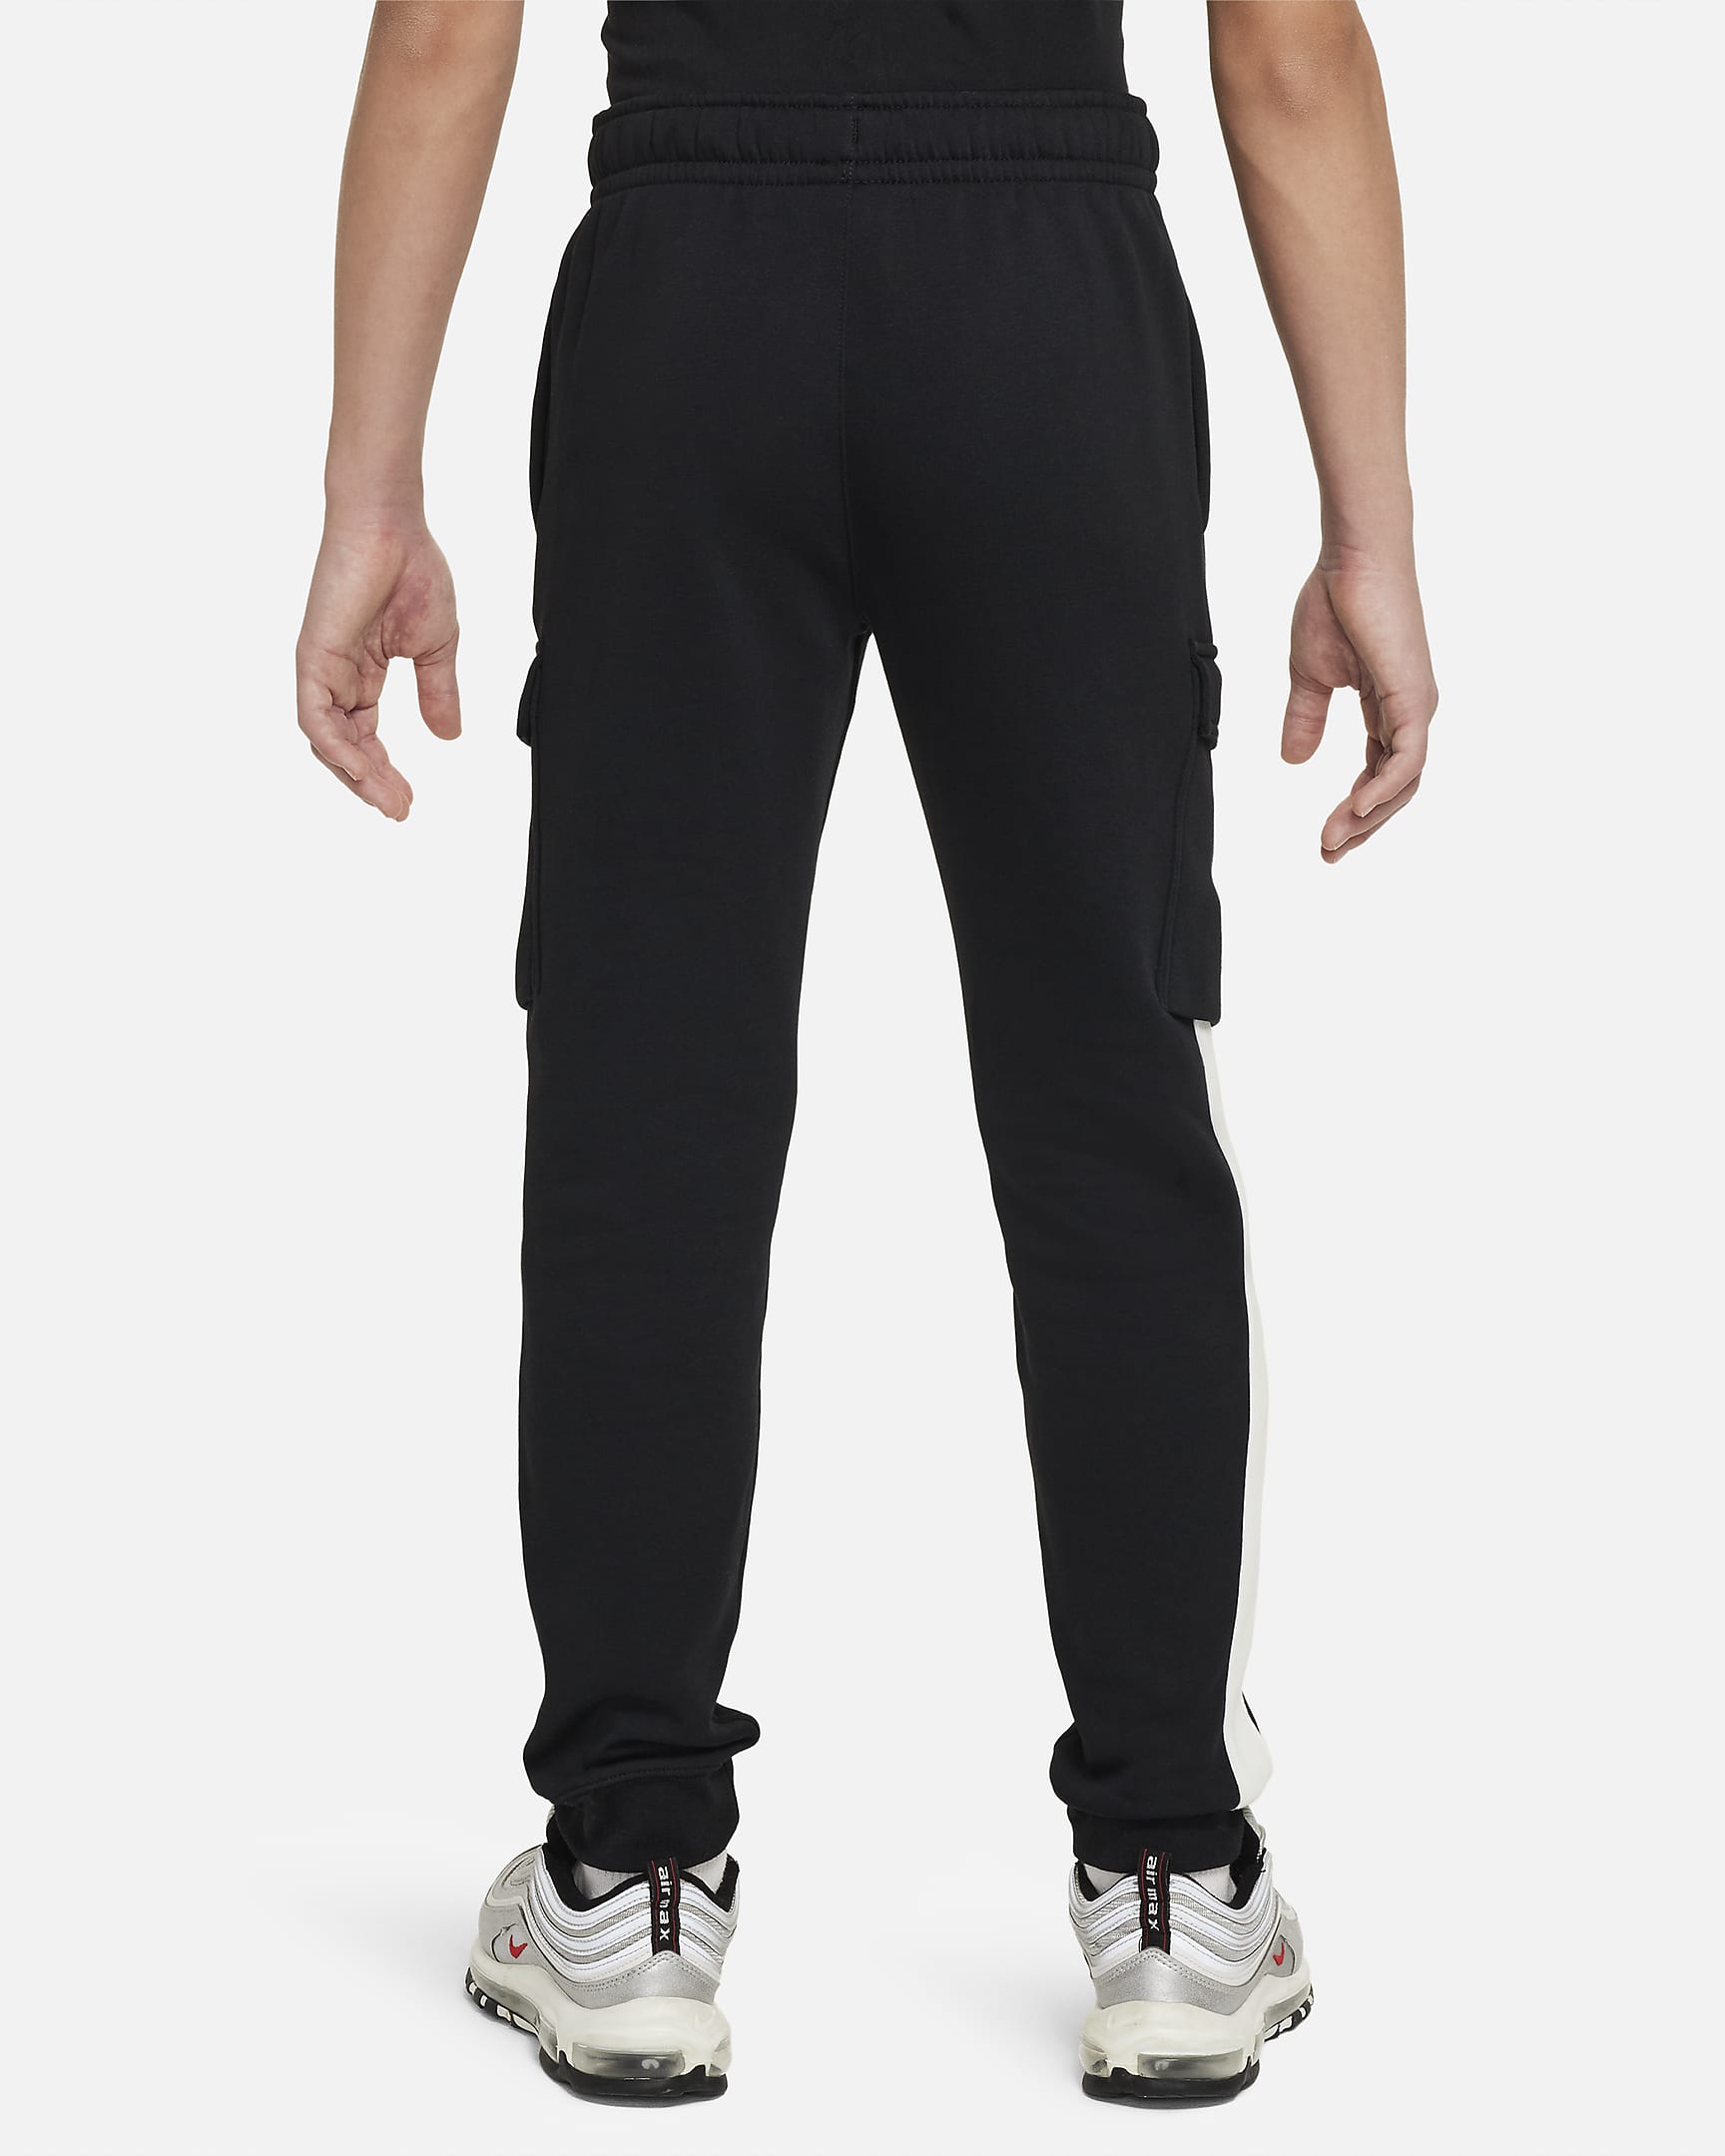 Pantaloni cargo in fleece Nike Air – Ragazzo/a - Nero/Bianco